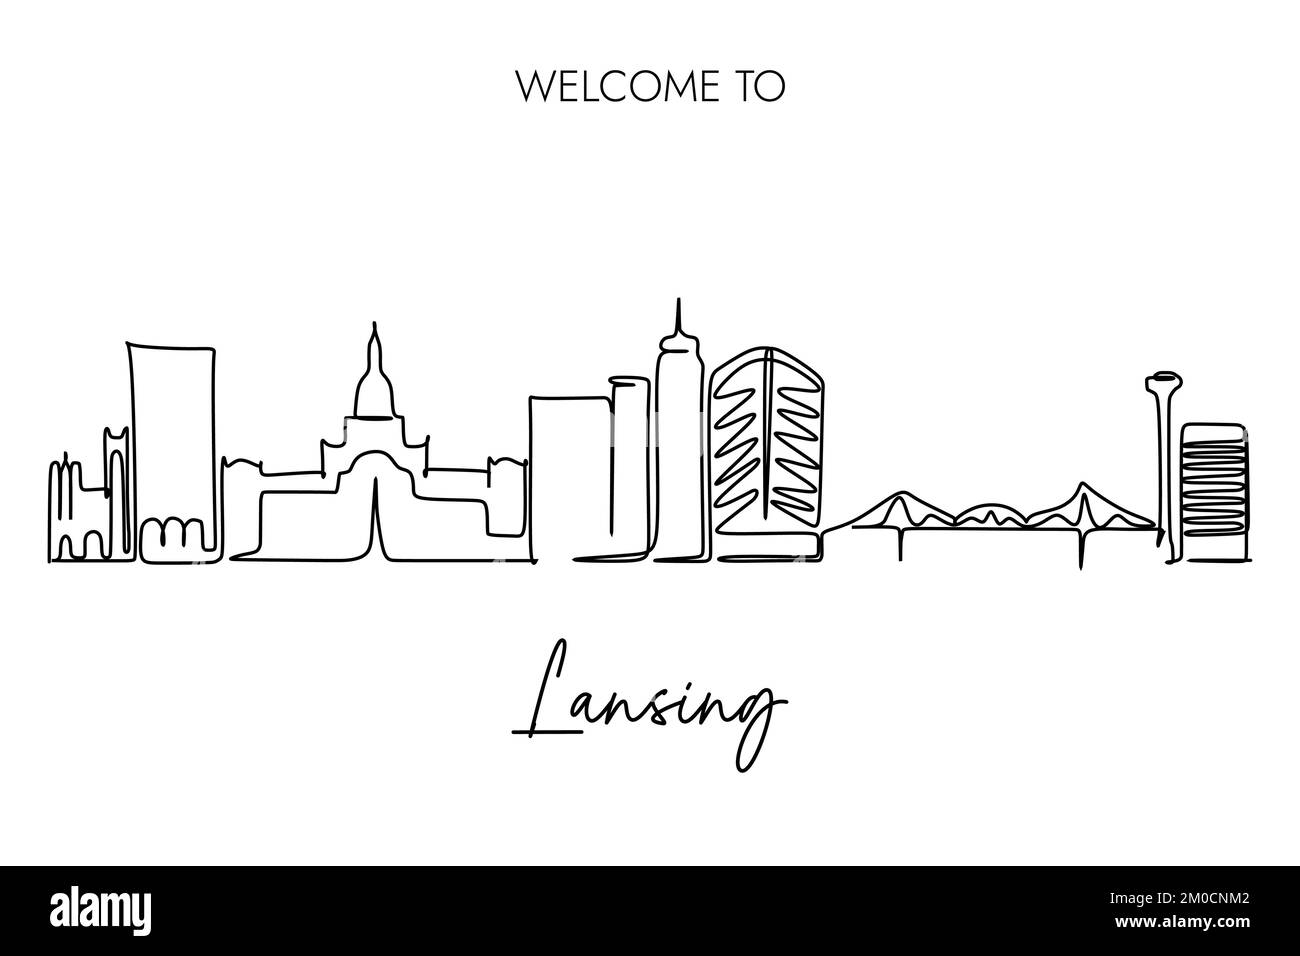 Disegno continuo di una linea di Lansing Skyline con Welcome to Lansing Copywriting. Disegno a mano di stile per la capitale del Michigan United Illustrazione Vettoriale